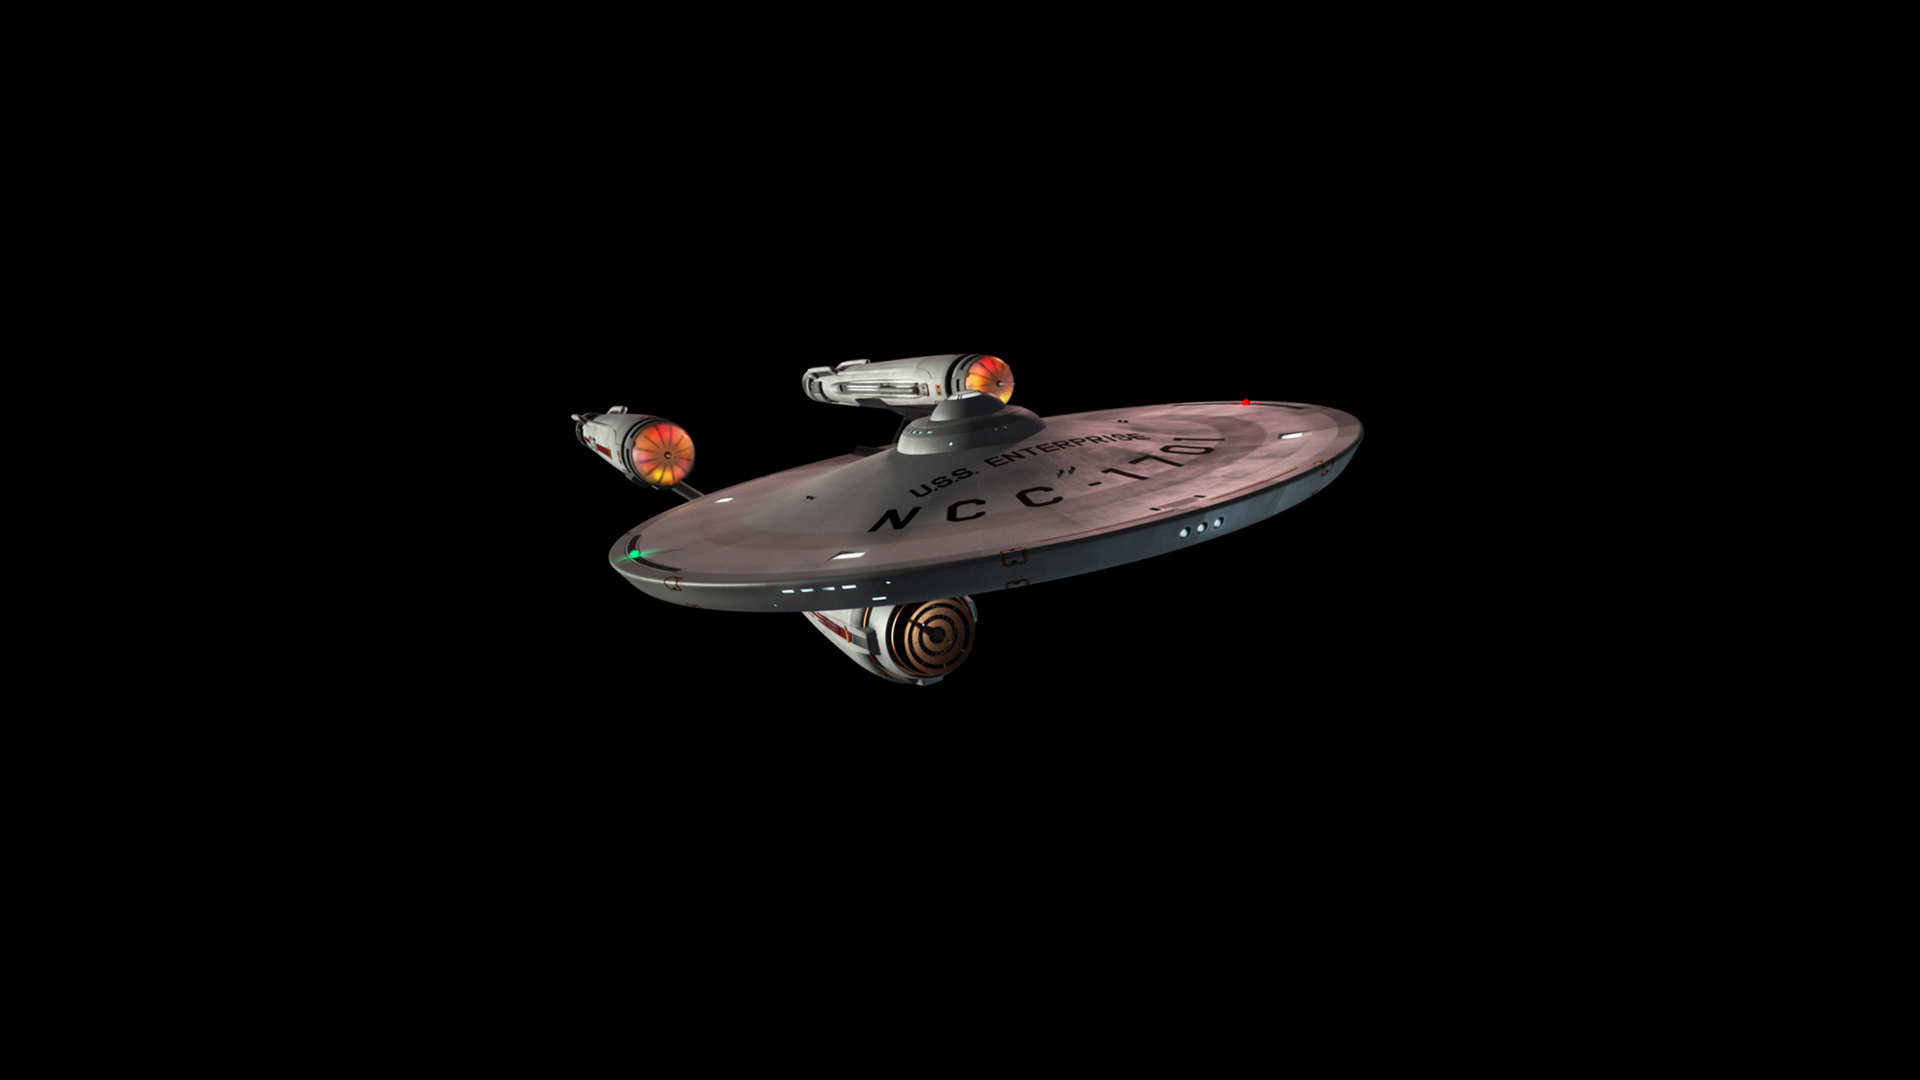 Descarga gratuita de fondo de pantalla para móvil de Star Trek, Ciencia Ficción.